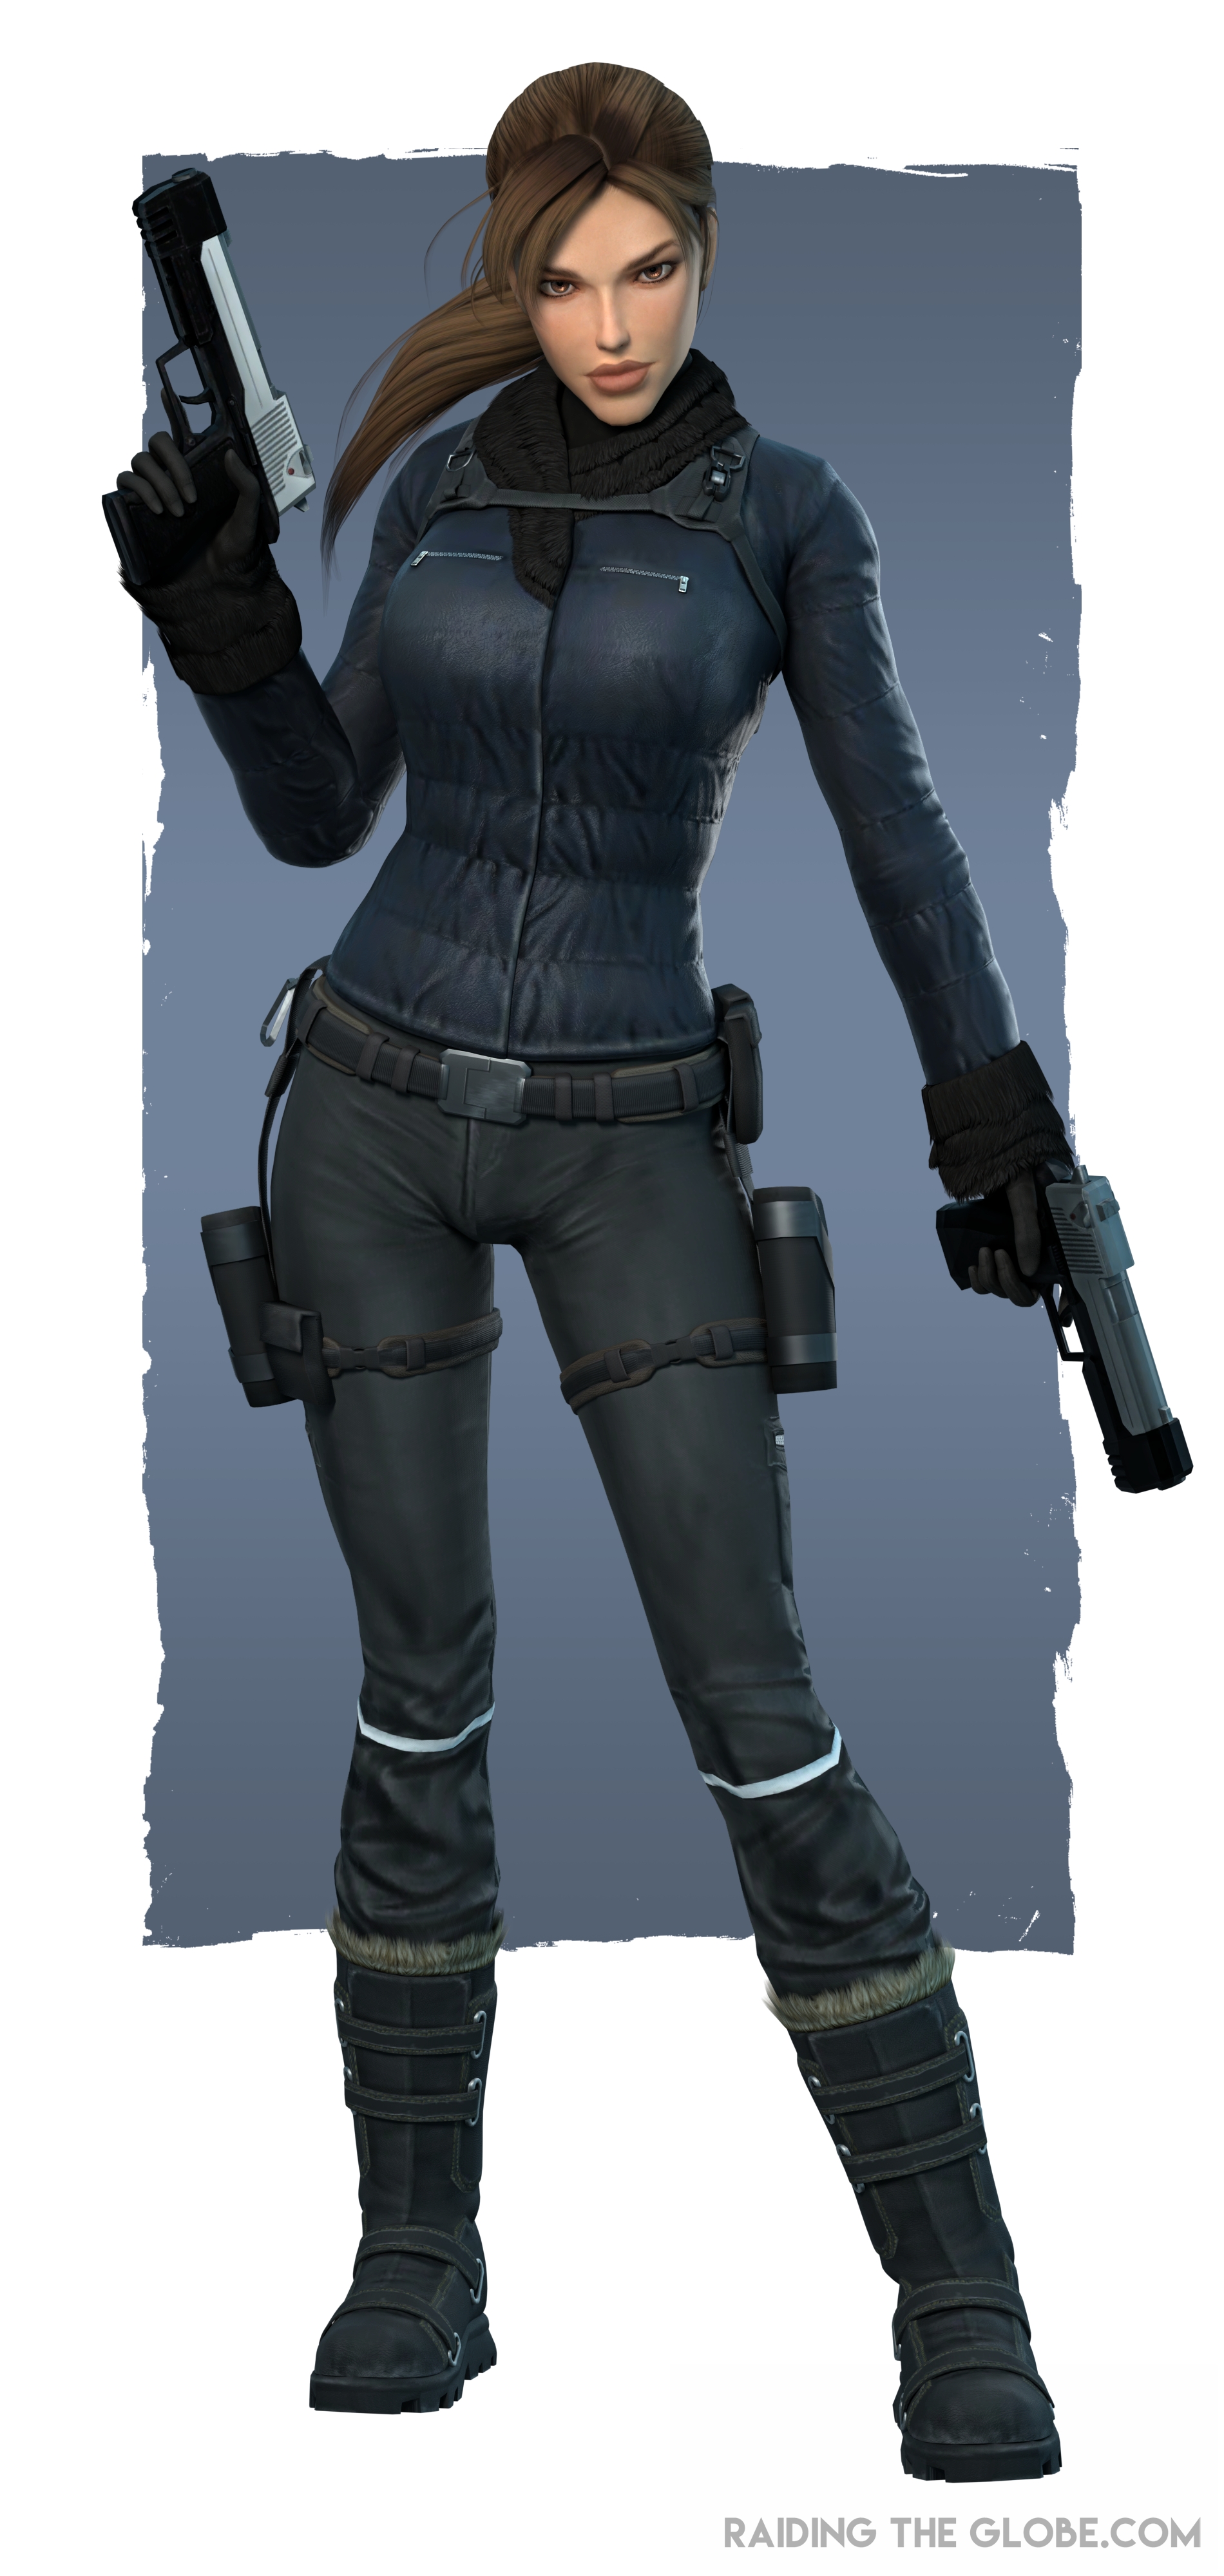 Lara Cosplay Costume from Tomb Raider: Underworld